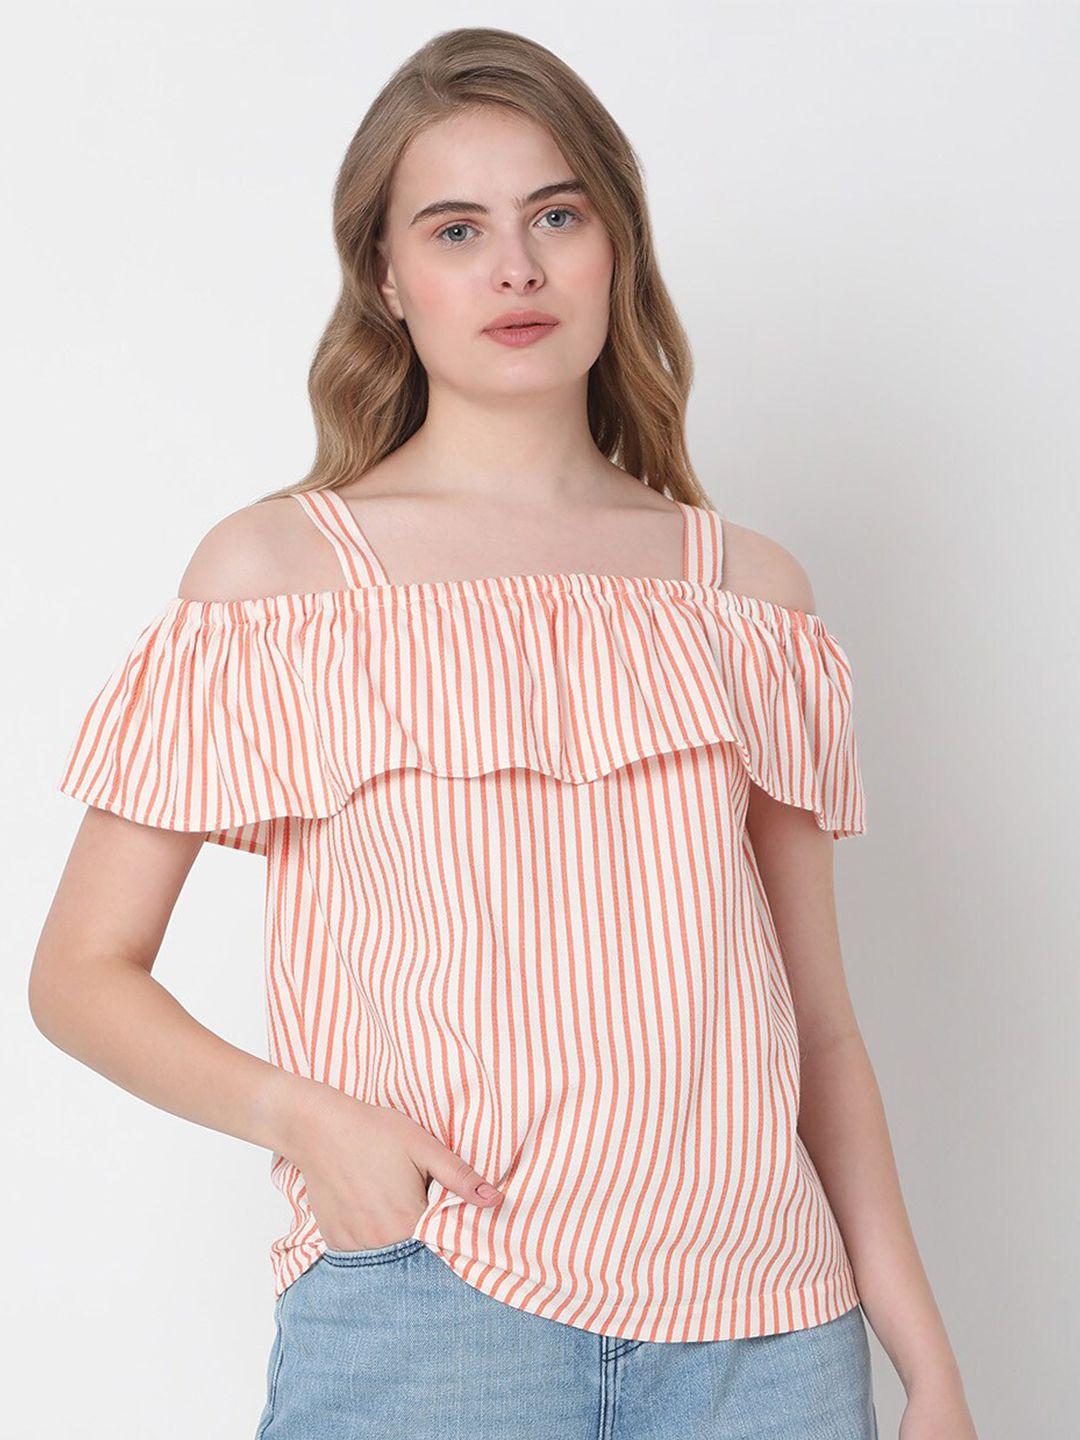 vero moda orange striped top